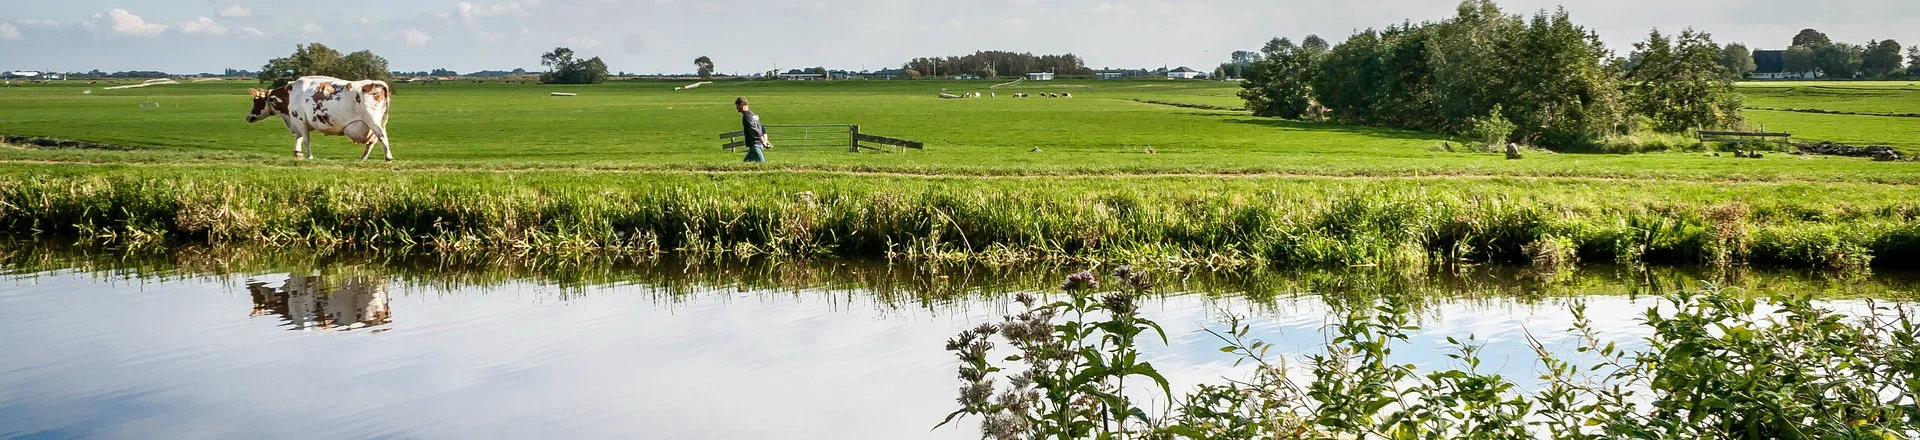 Nieuw lectoraat Agrarisch waterbeheer in Dronten